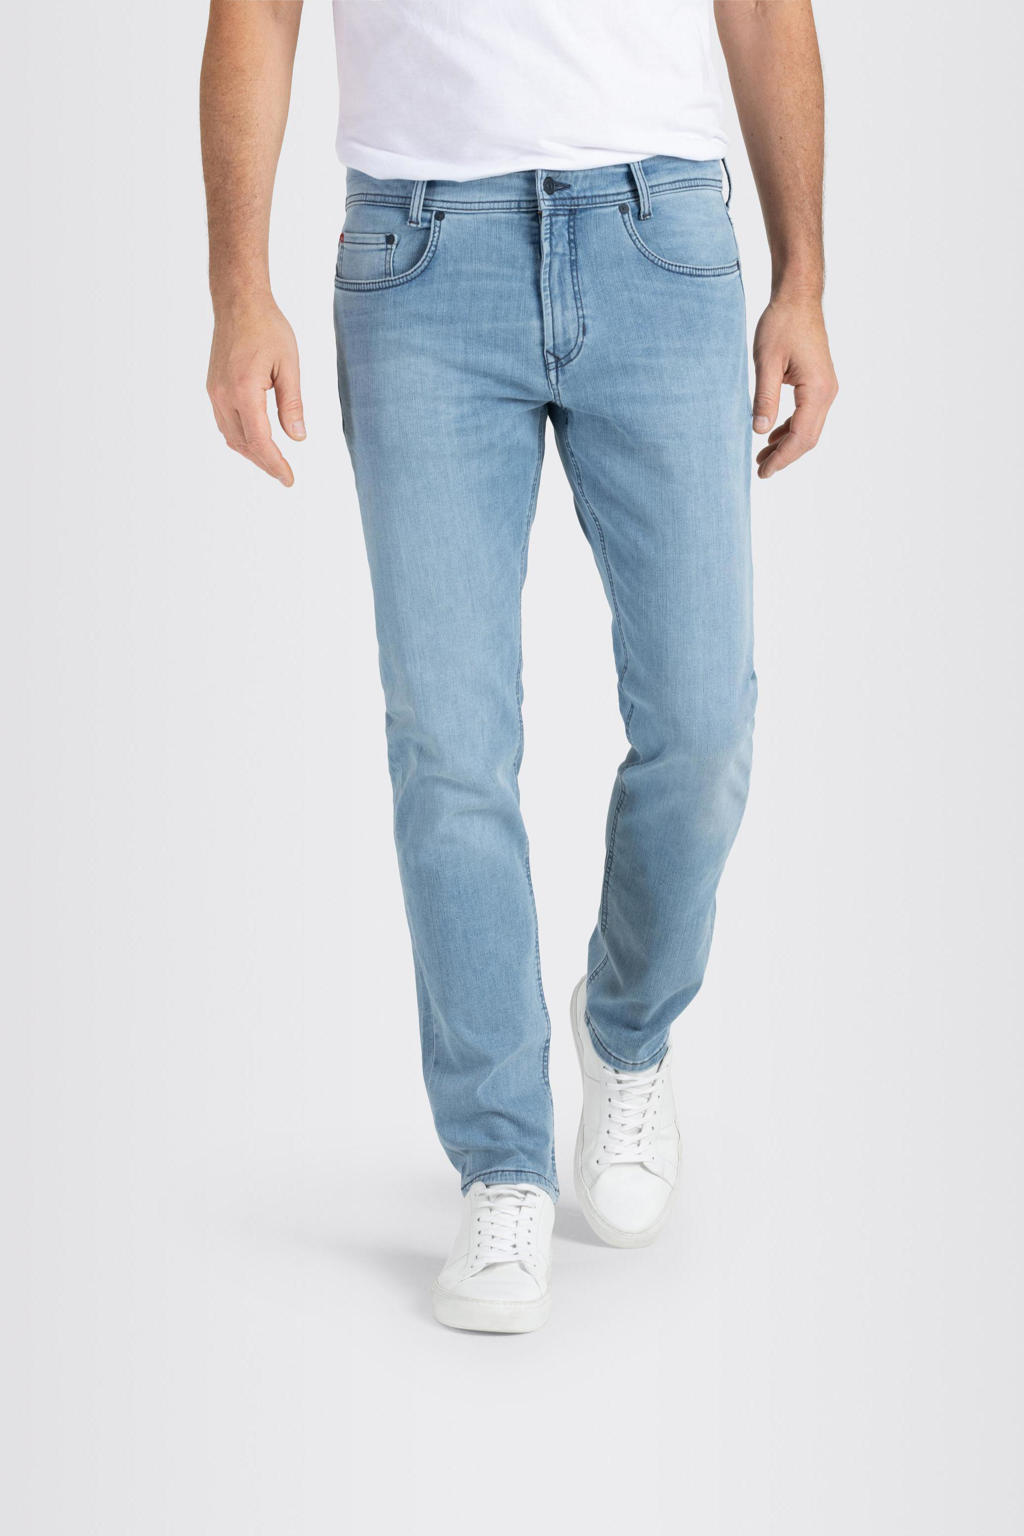 MAC regular fit jeans Macflexx pure indigo authentic